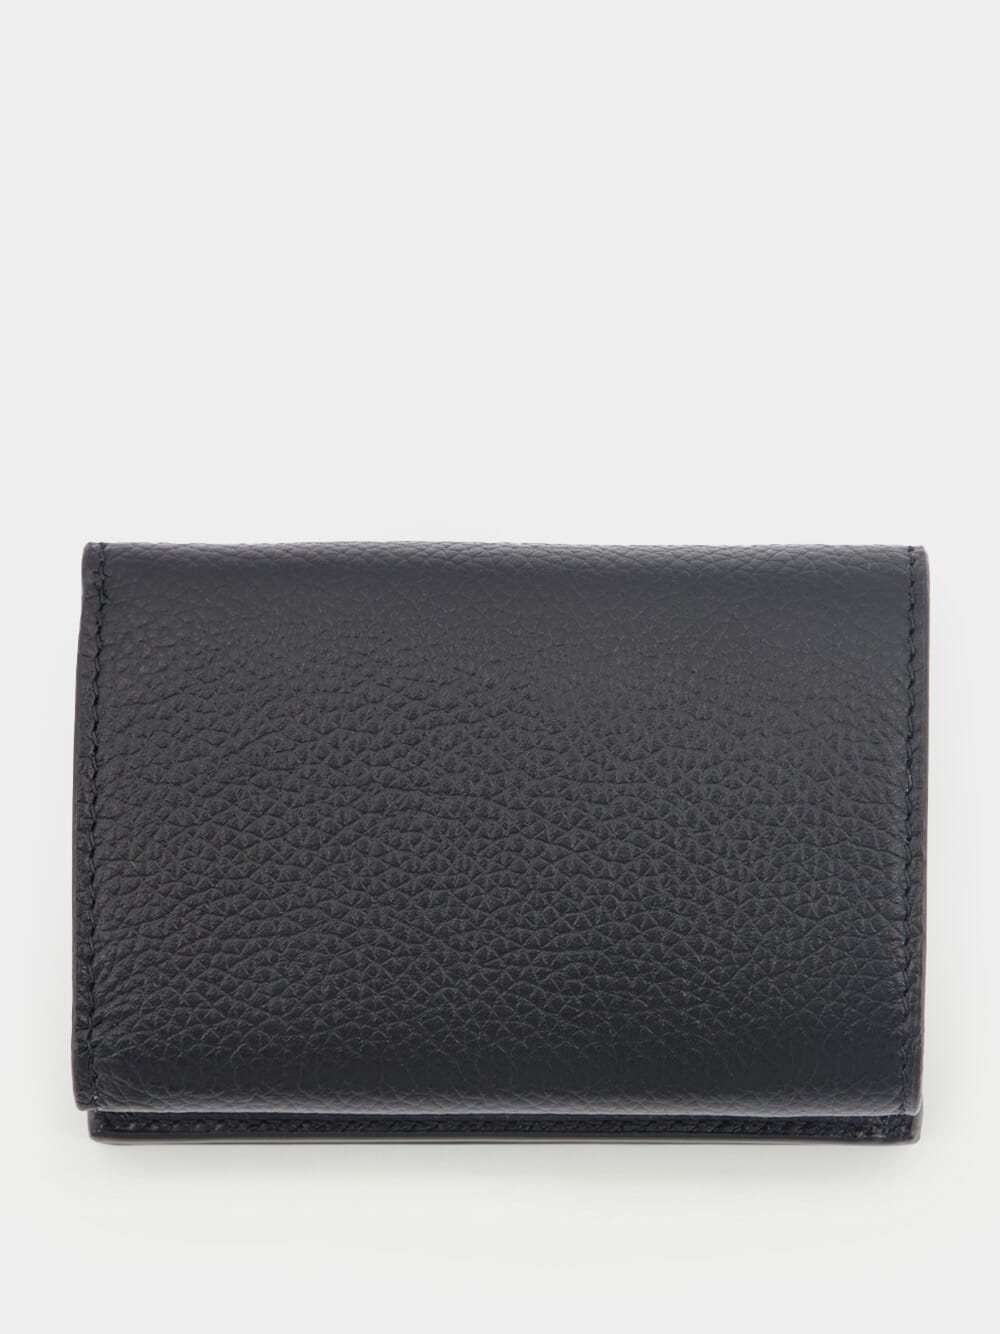 Cash Leather Mini Wallet